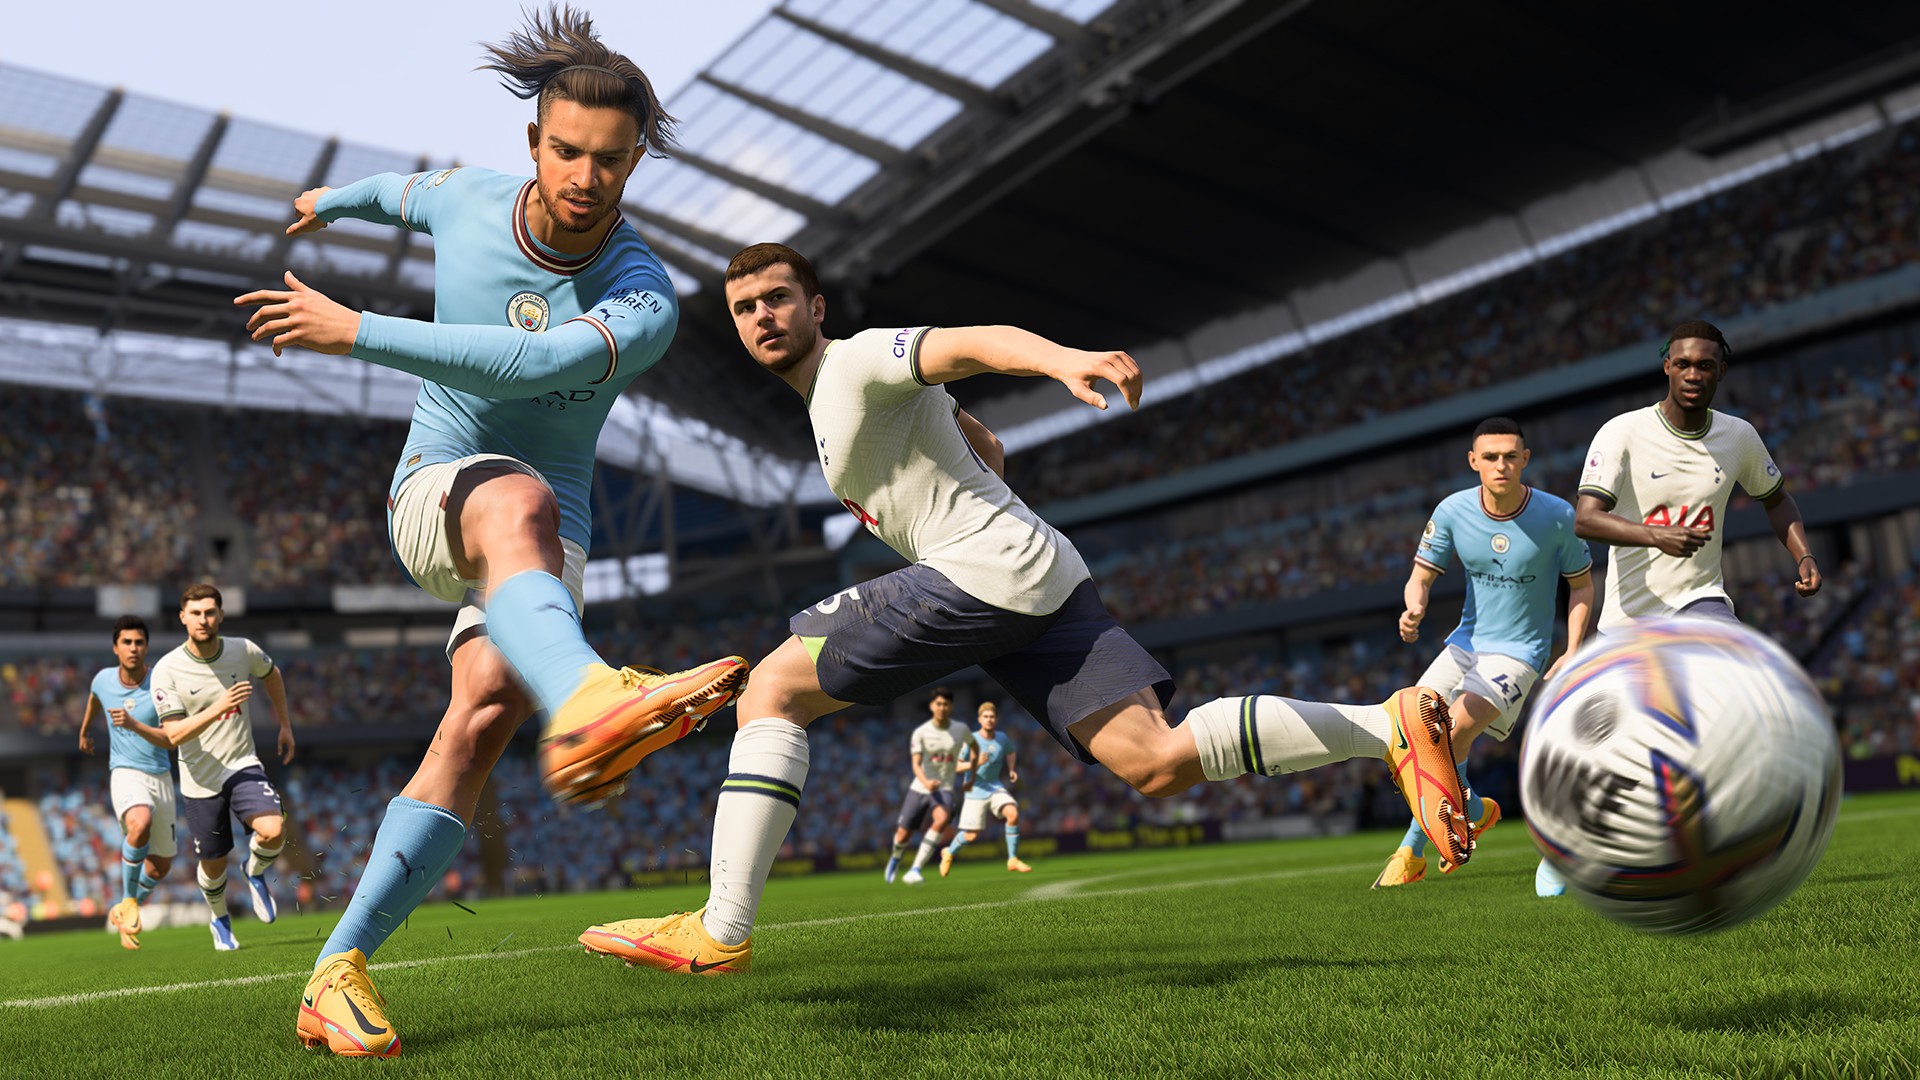 Comprar FIFA 23 EA App